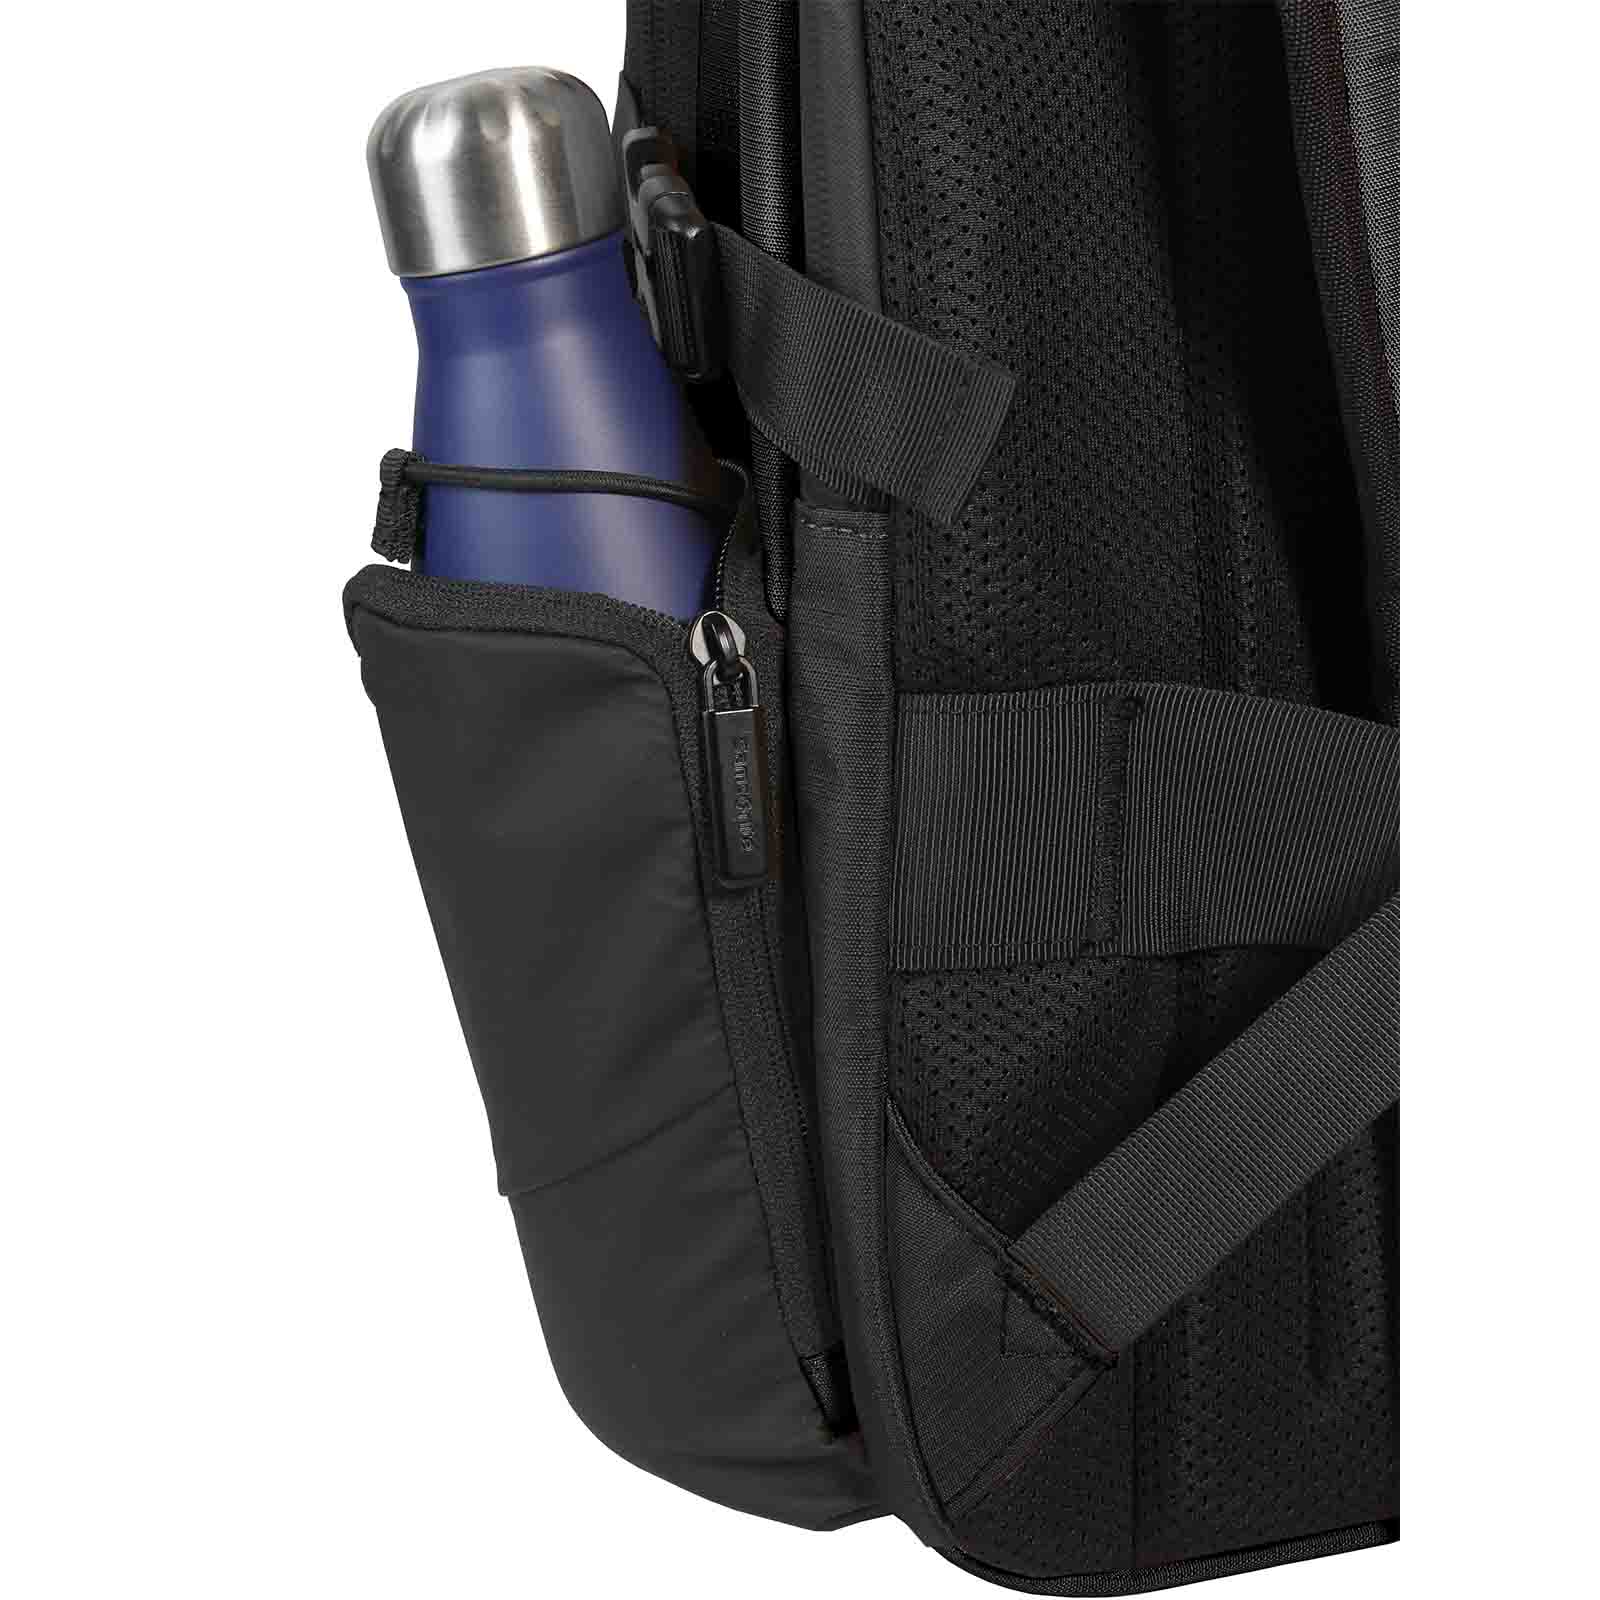 Samsonite-Biz2go-15-Inch-Laptop-Backpack-Black-Bottle-Holder